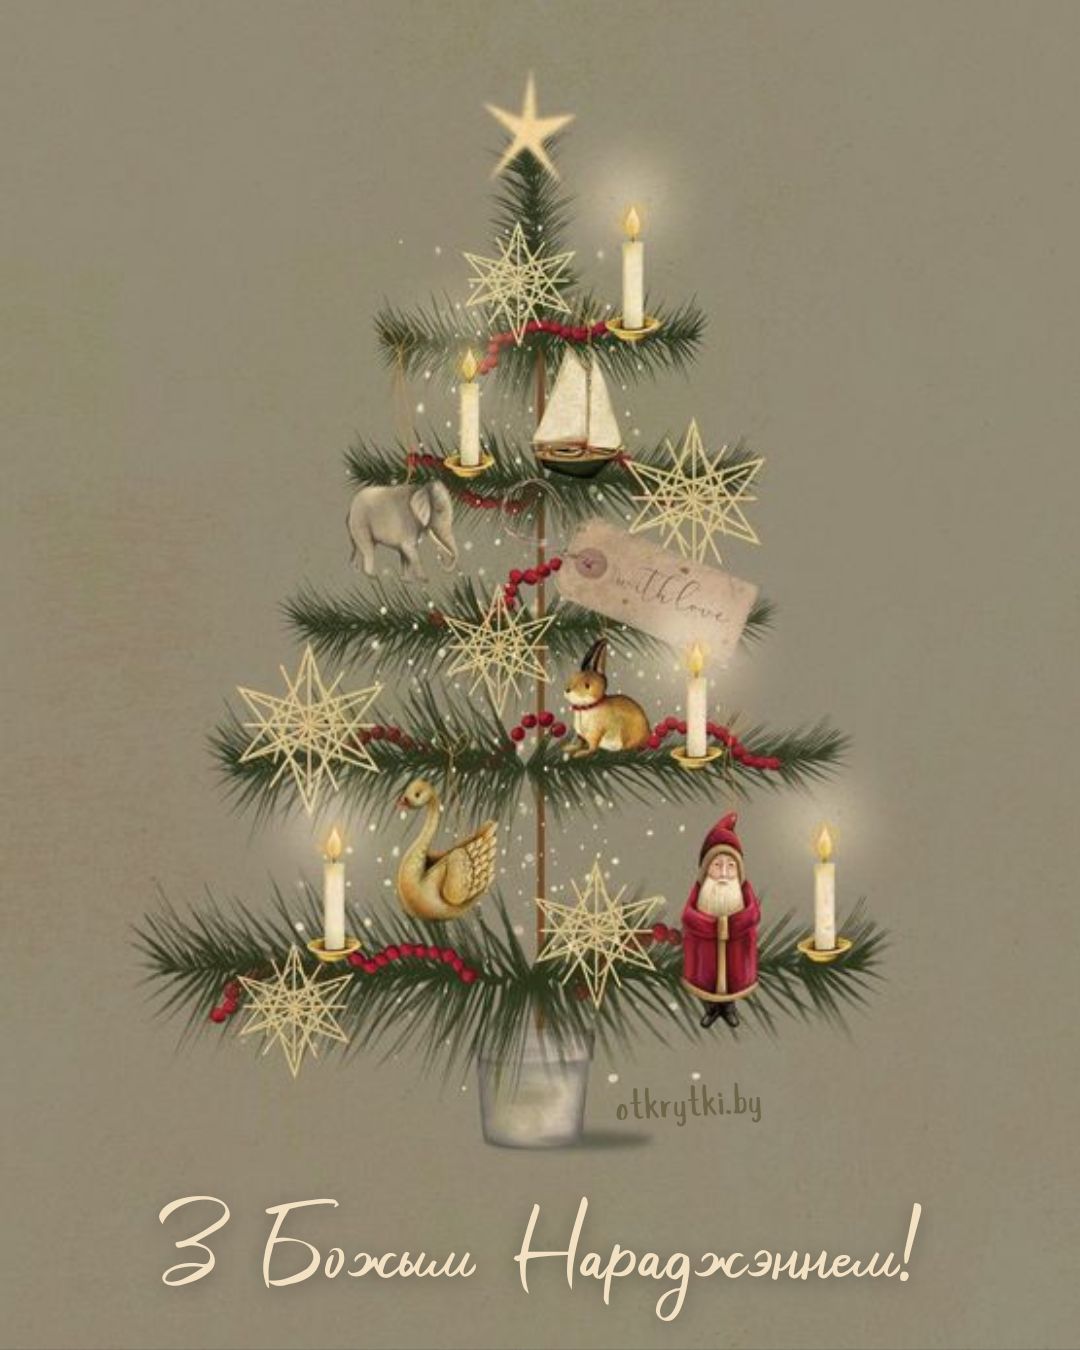 Простая белорусская рождественская открытка